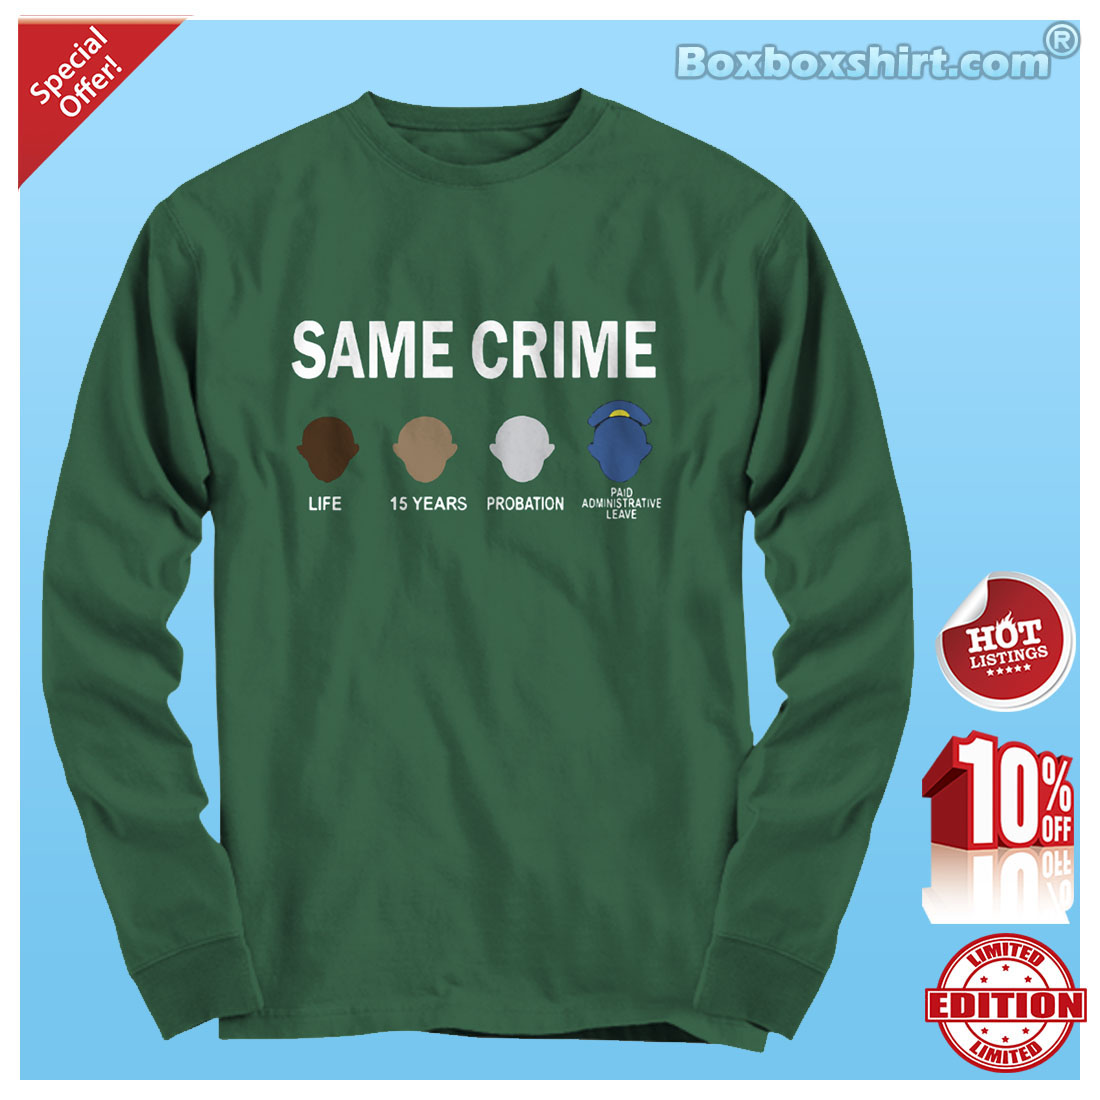 Same crime life 15 years probation shirt